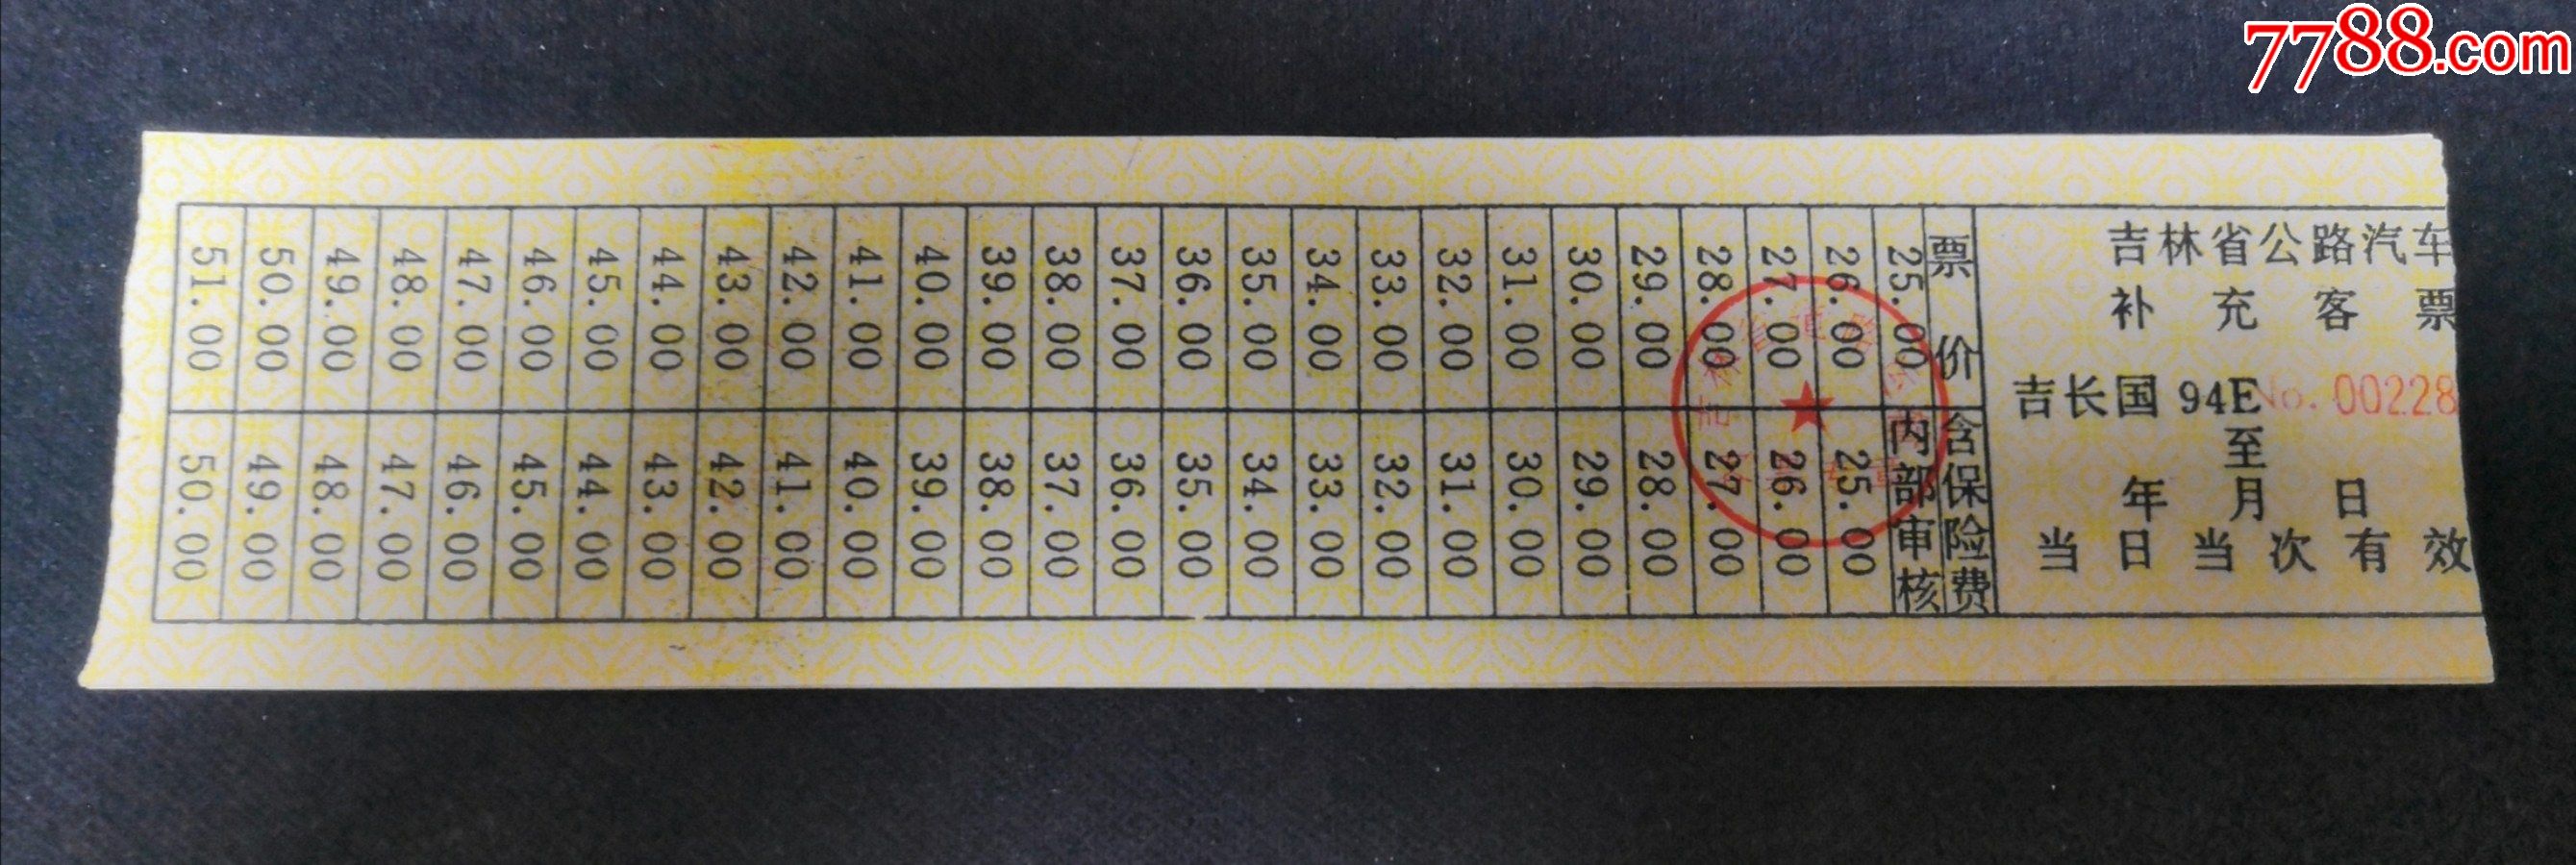 1994吉林省公路汽车补充车票长春